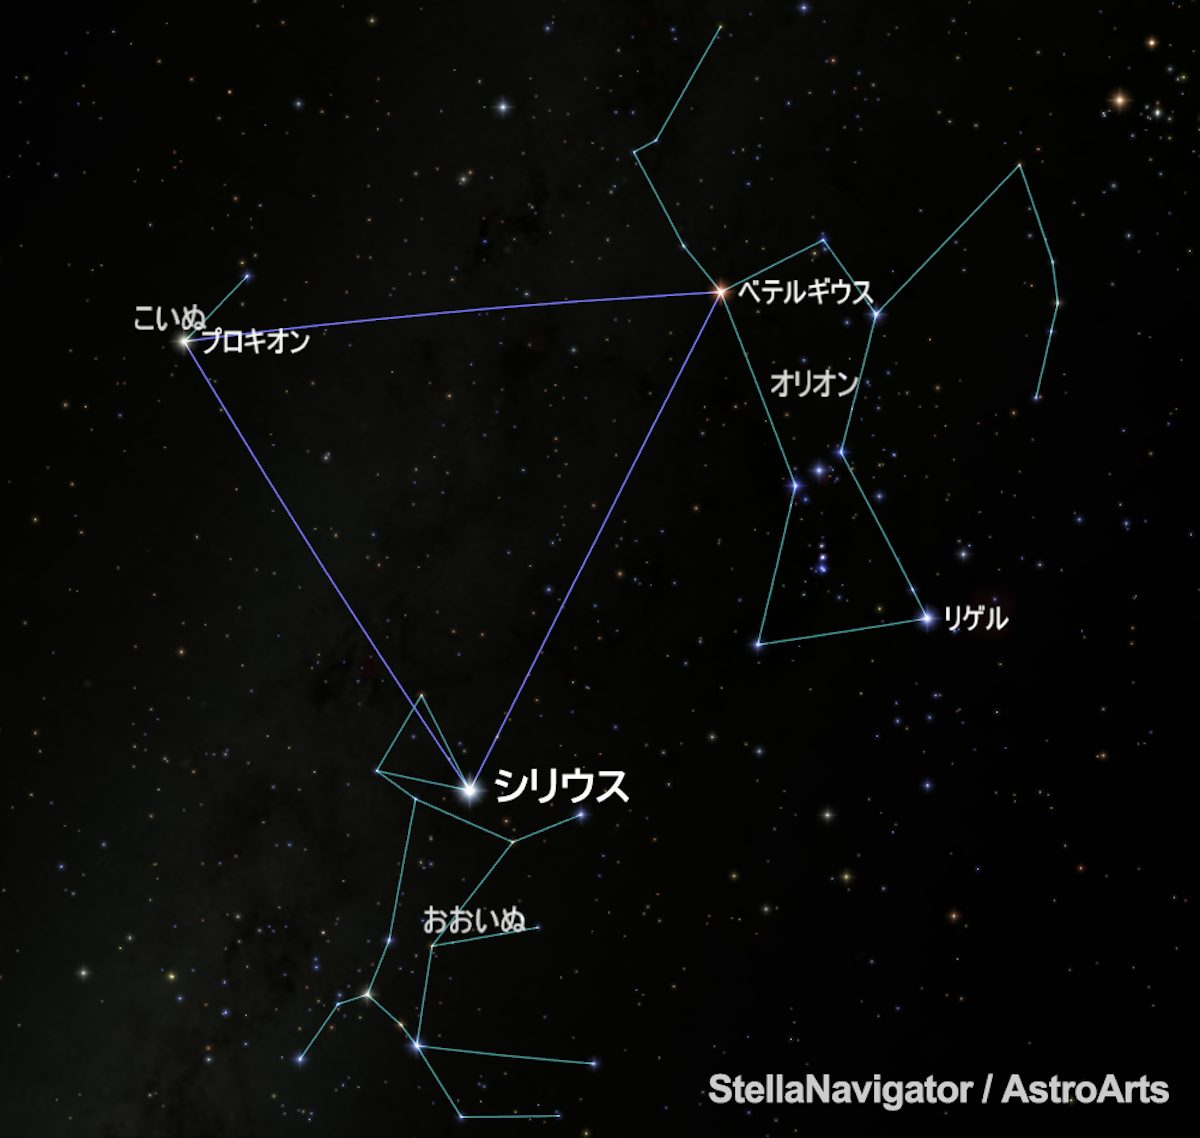 冬空に輝くシリウスが、古代エジプトでは夏に重要な星だった理由